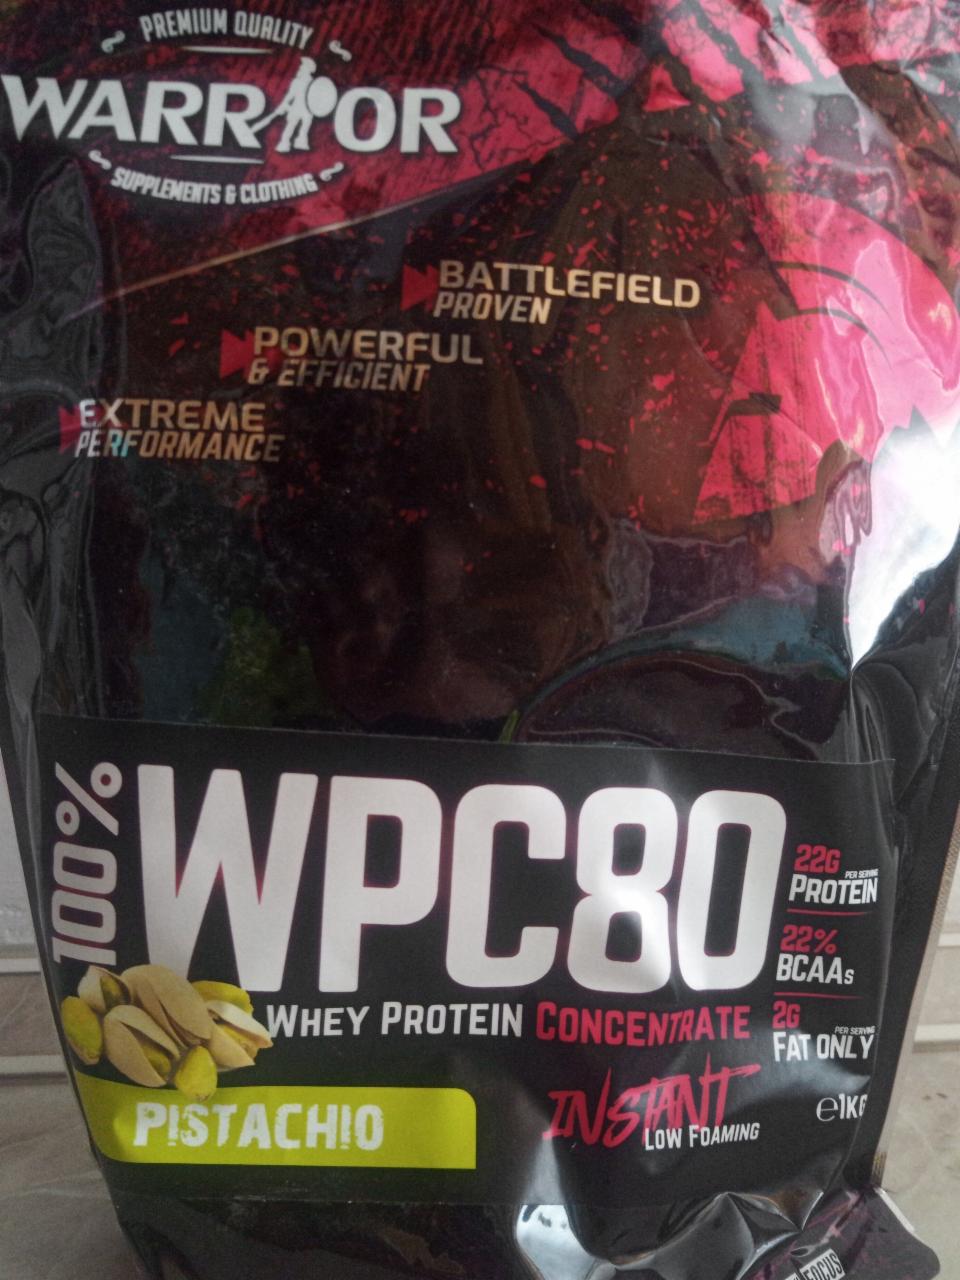 Fotografie - 100% WPC80 pistachio syrovátkový proteinový koncentrát Warrior